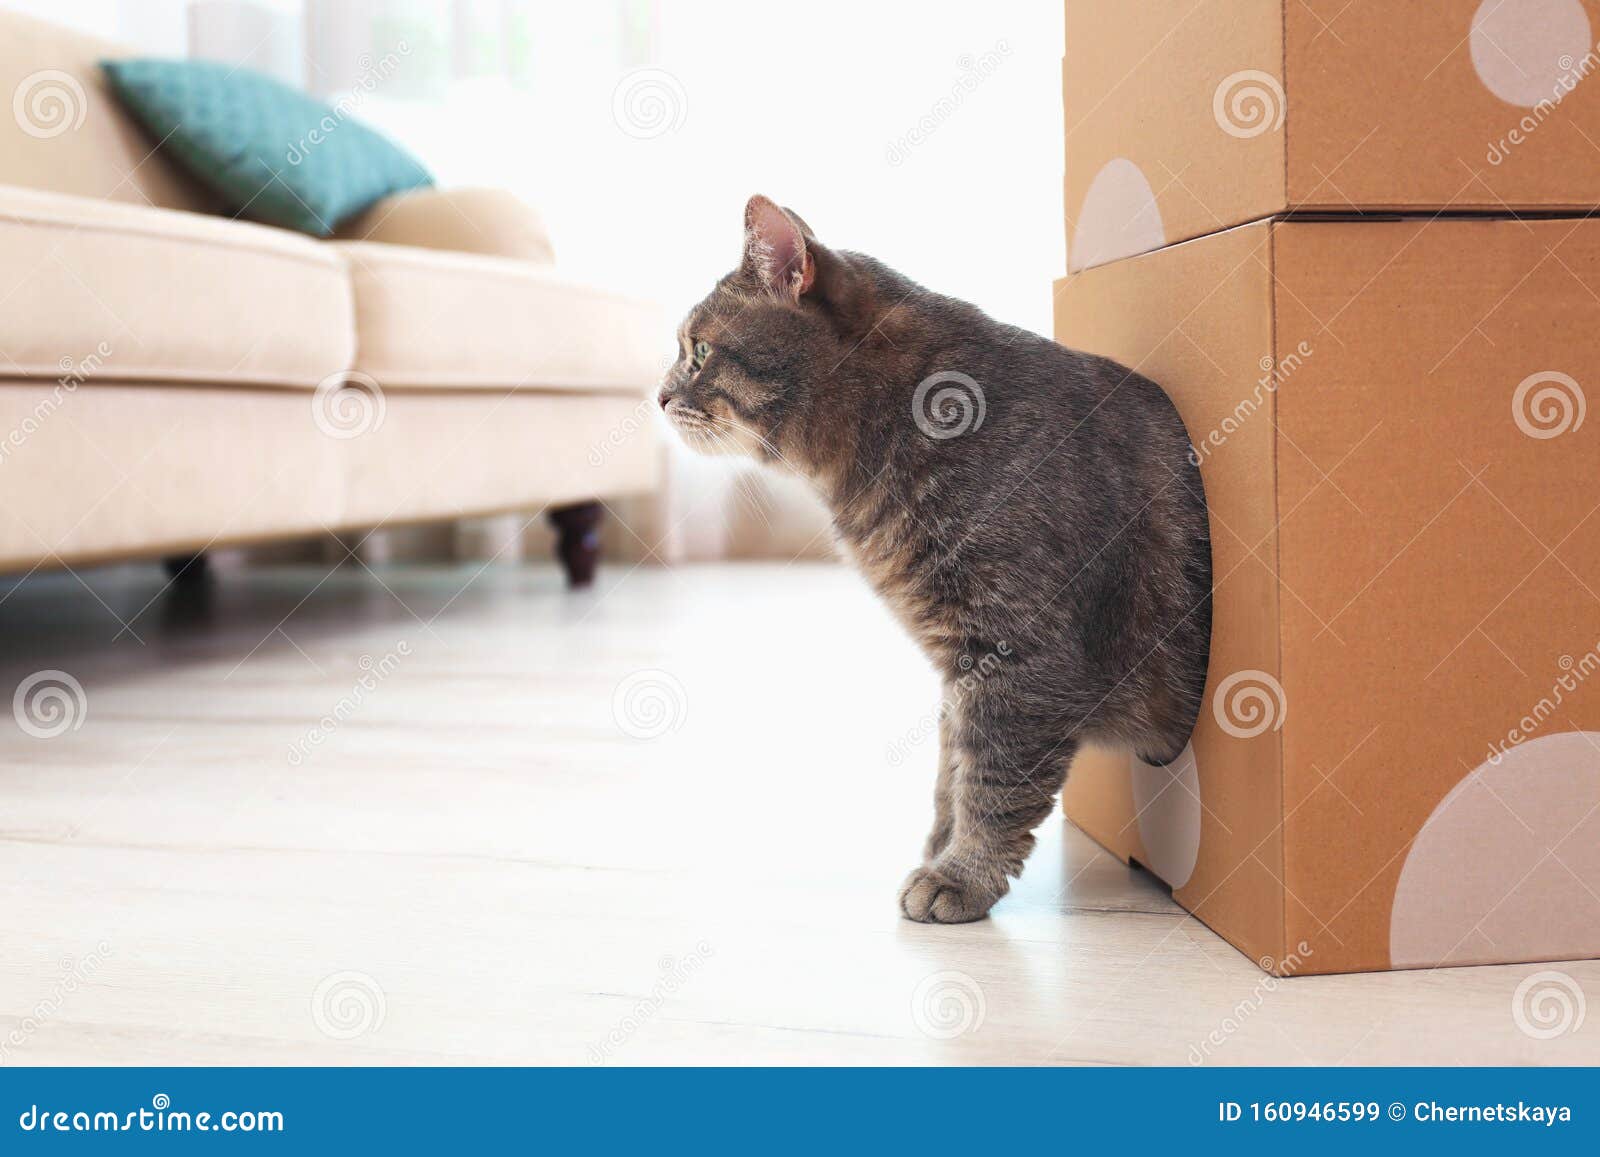 Cute Grau Tabby Katze Mit Karton Im Zimmer Stockbild Bild Von Cute Karton